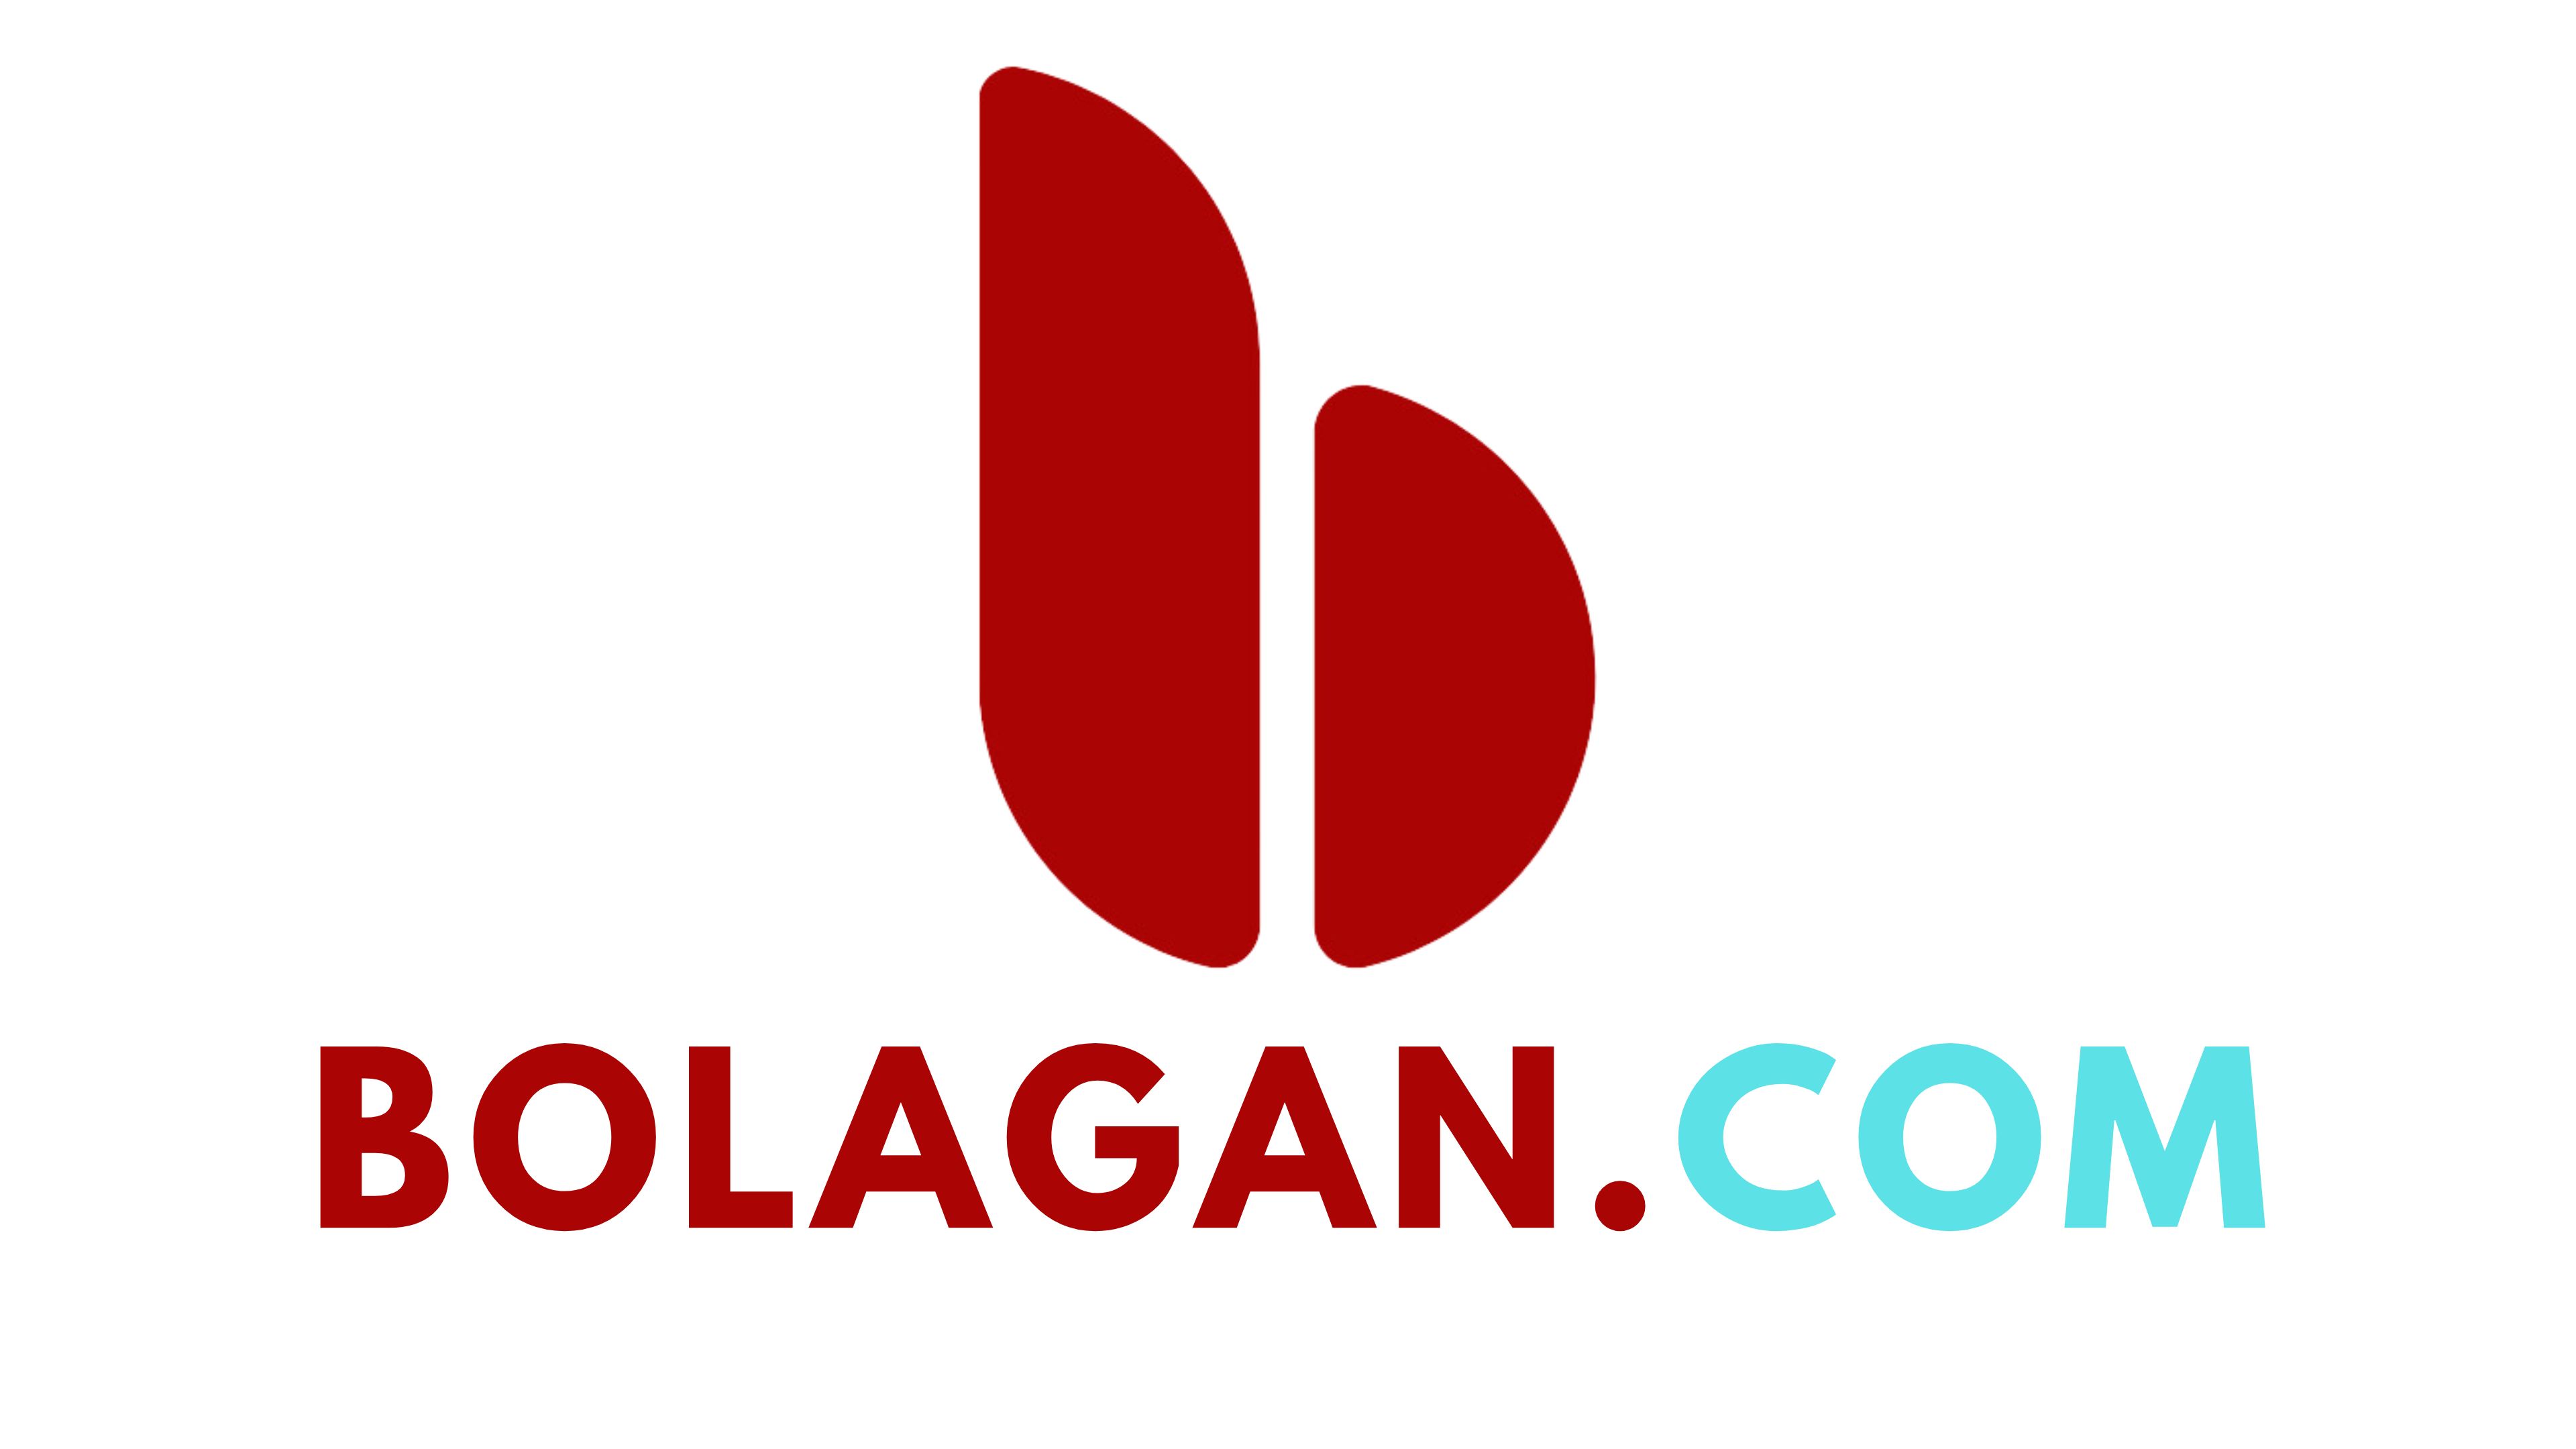 Bolagan.com